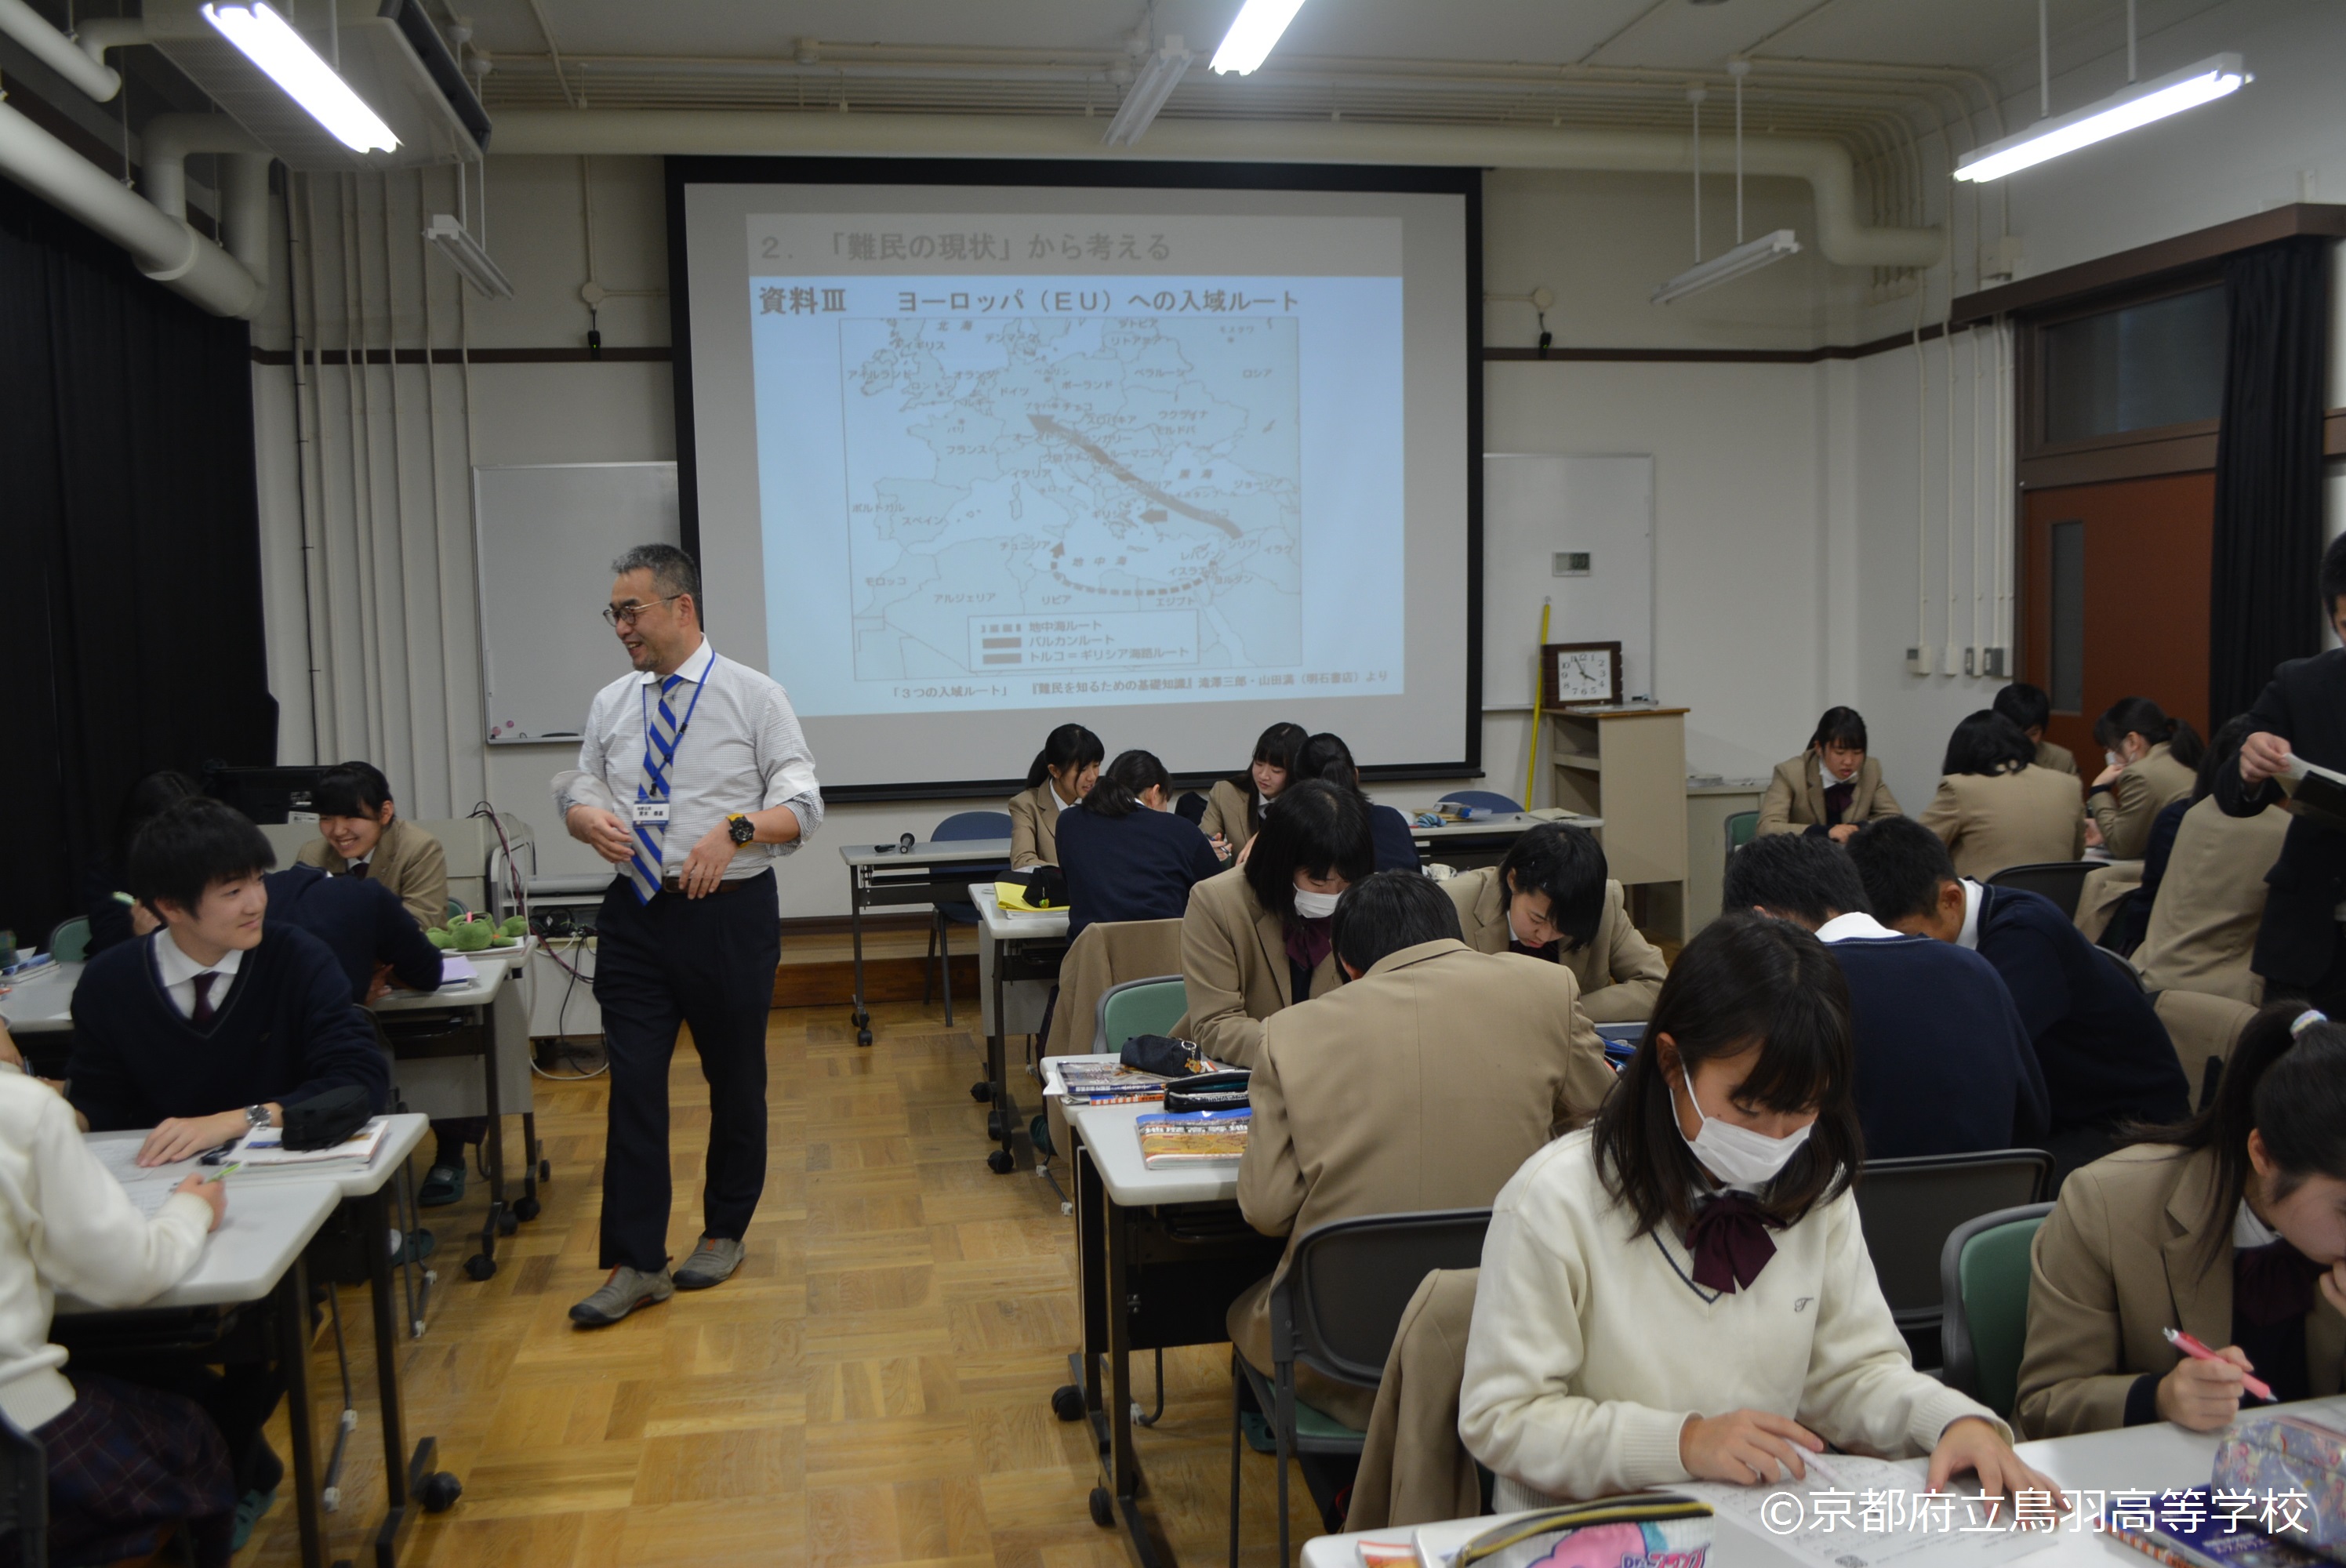 実践例 Sgh指定校の発展的授業 京都 国連unhcr協会